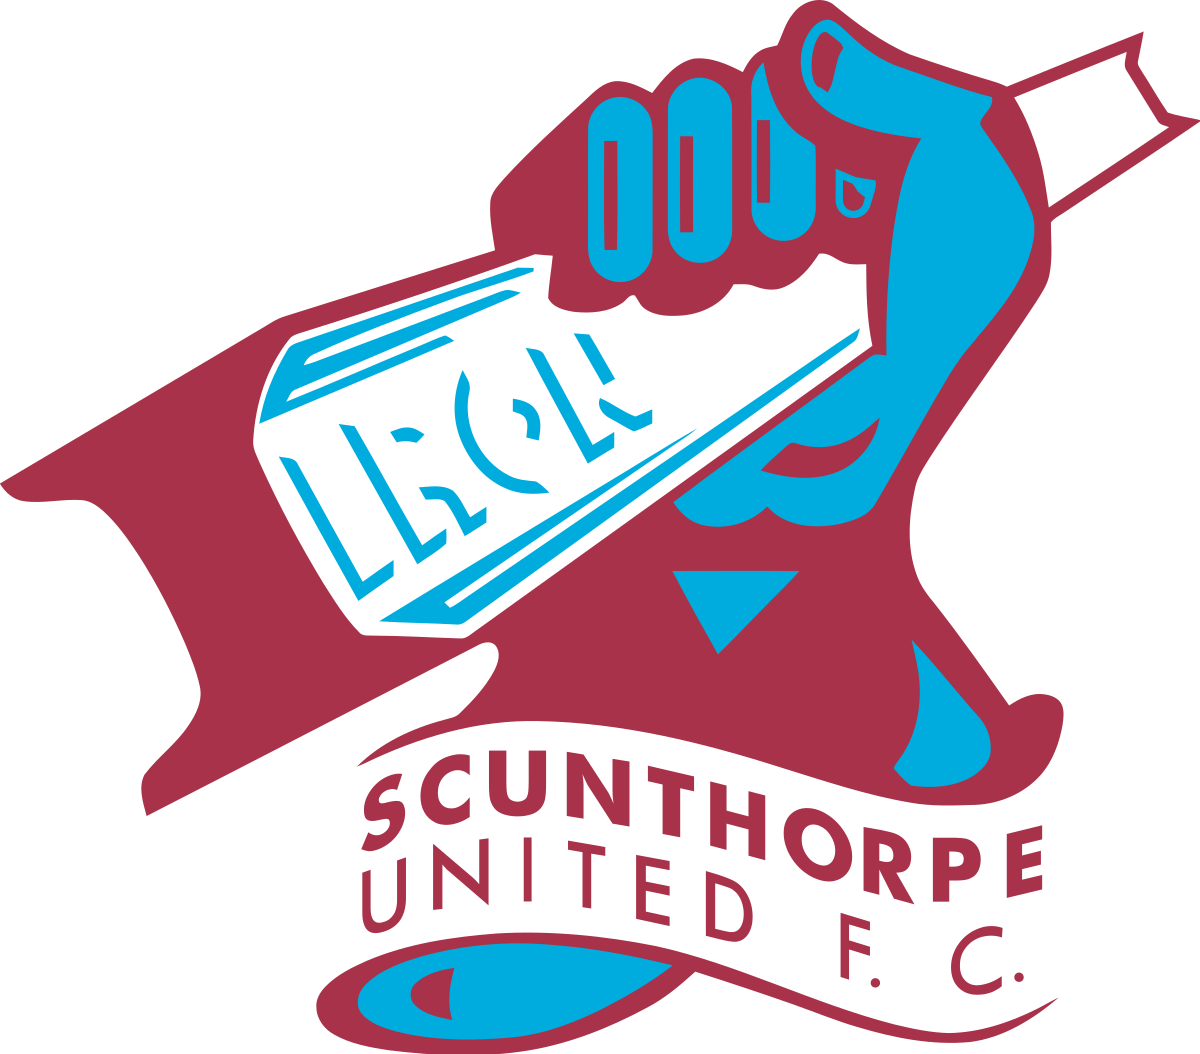 Scunthorpe United U-23 logo